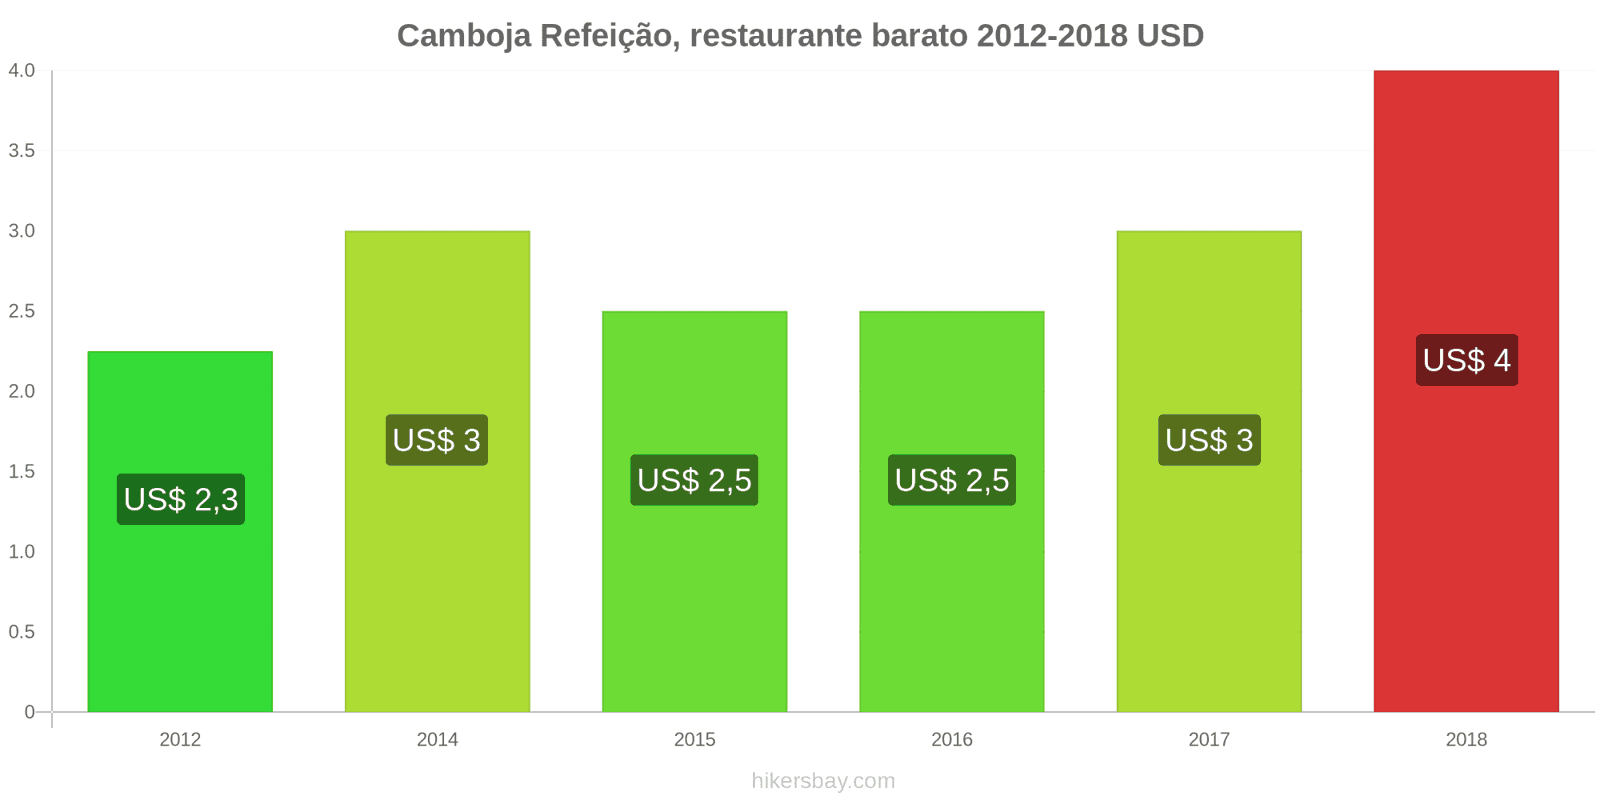 Camboja mudanças de preços Refeição em um restaurante econômico hikersbay.com